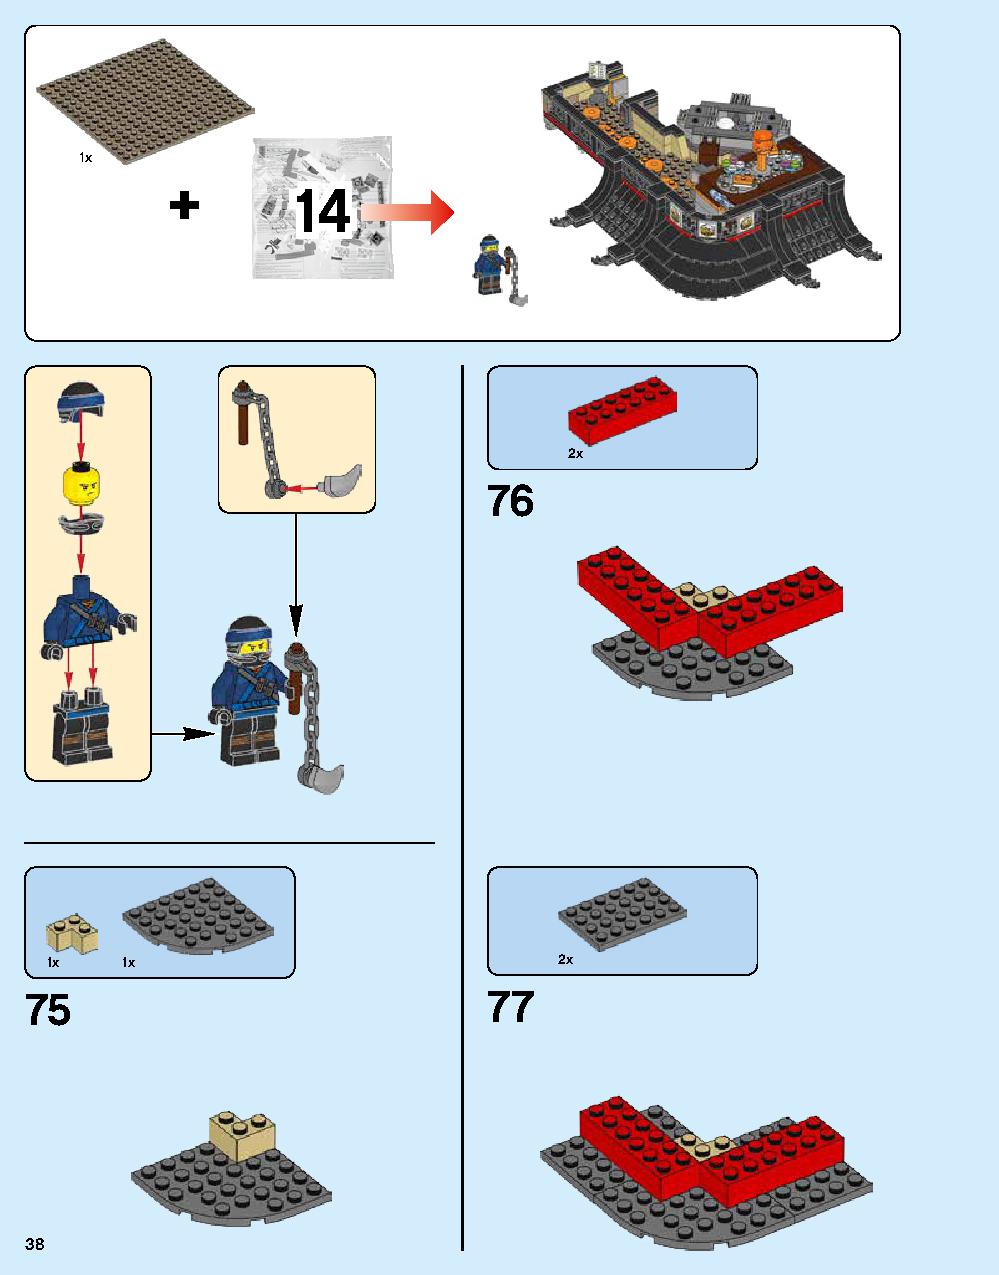 ニンジャゴー シティ 70620 レゴの商品情報 レゴの説明書・組立方法 38 page